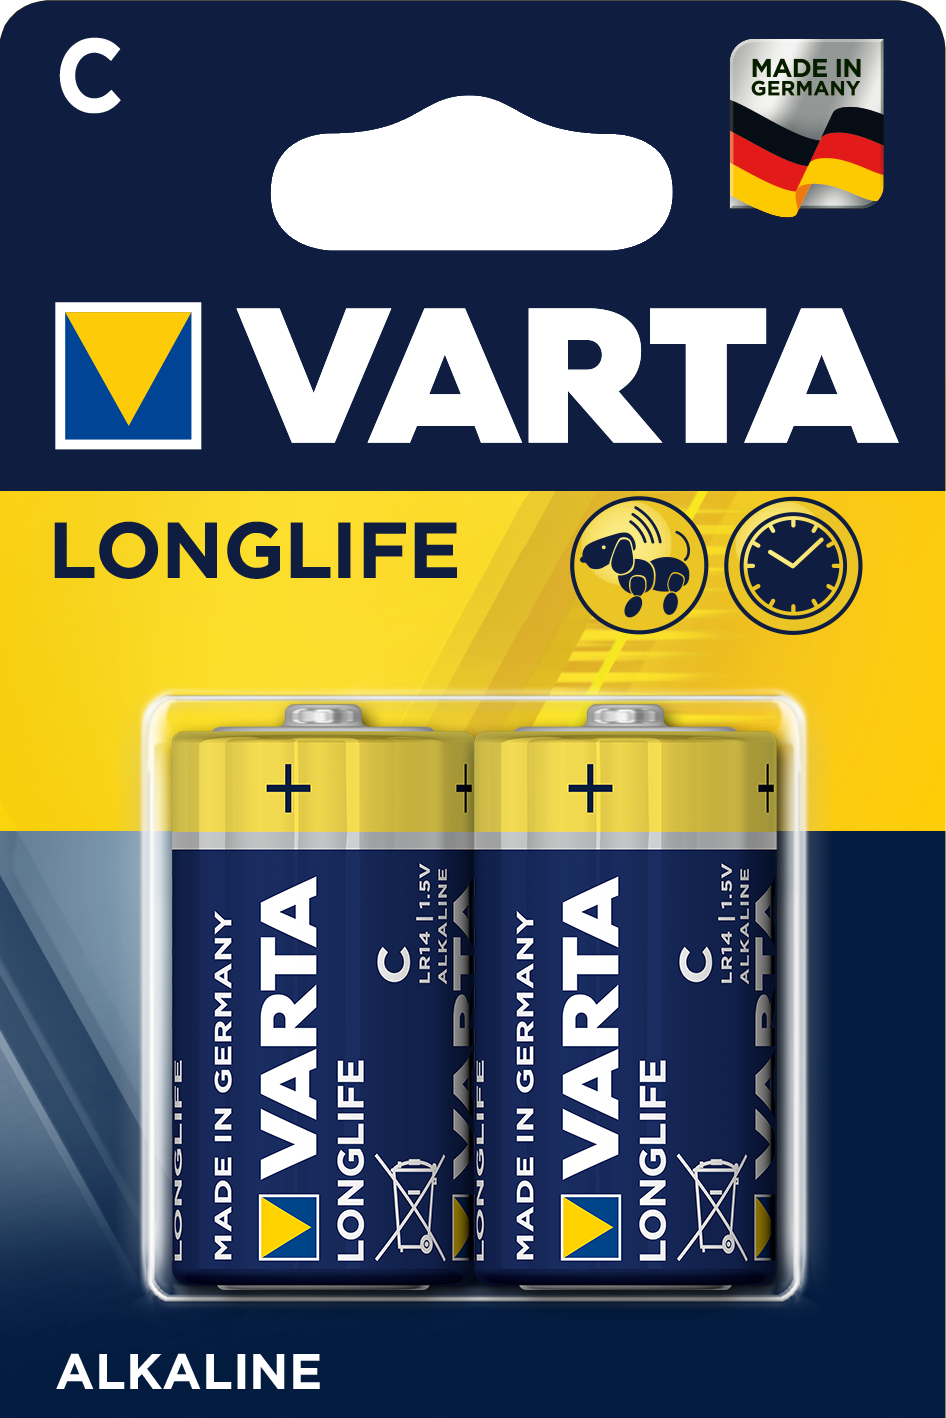 Varta LONGLIFE LR14 C BL2 Alkaline 1.5V (4114) (2 / 20 / 200) Батарейка Varta LONGLIFE LR14 C BL2 Alkaline 1.5V (4114) (2/20/200) (2 шт.) 04114101412